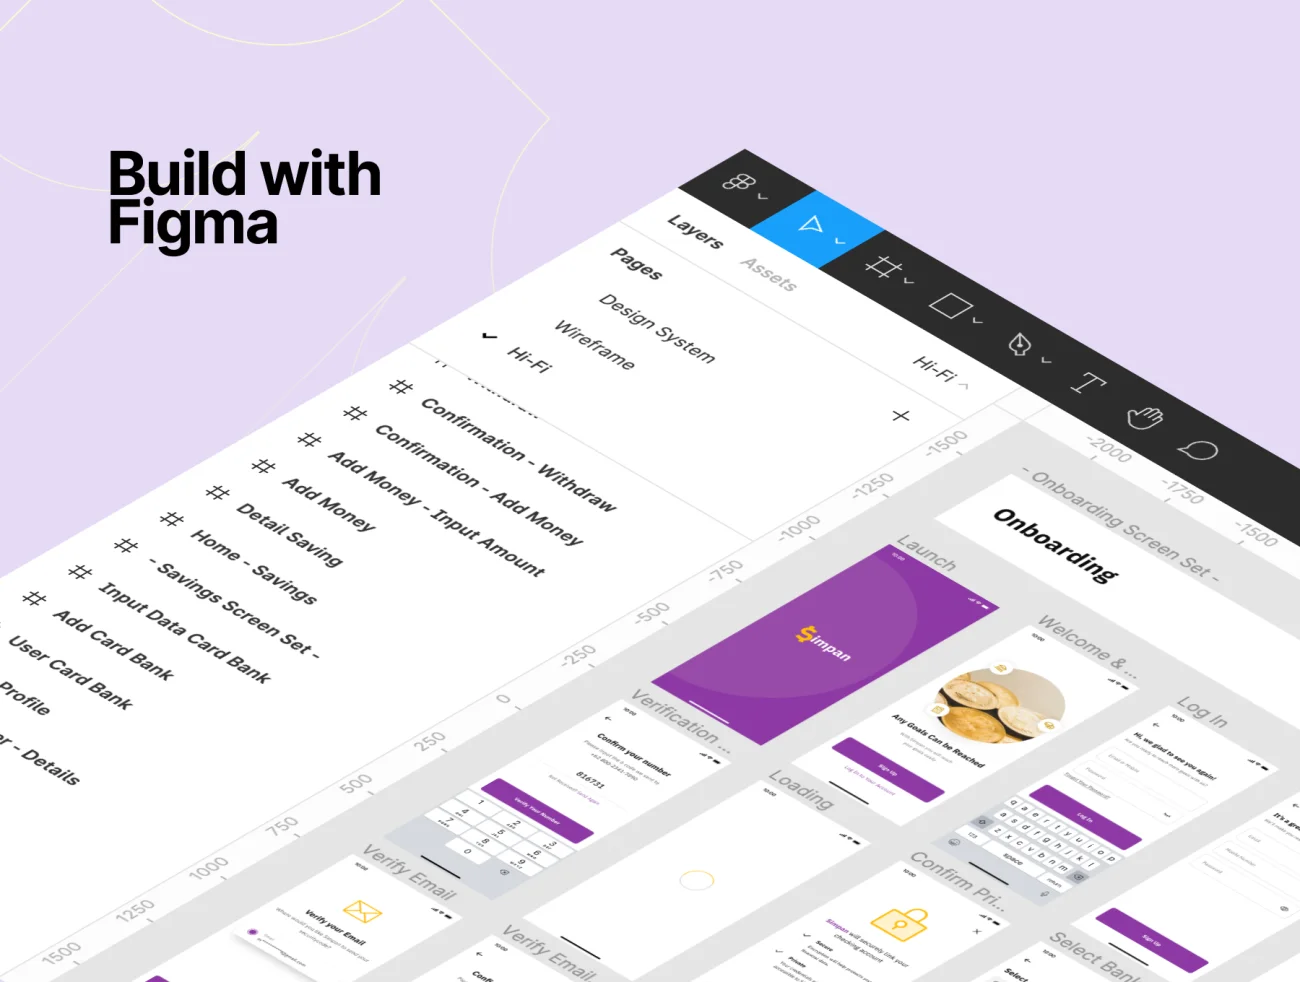 50屏理财记账应用UI设计套件素材 Simpan – Saving App UI Kit .figma插图13